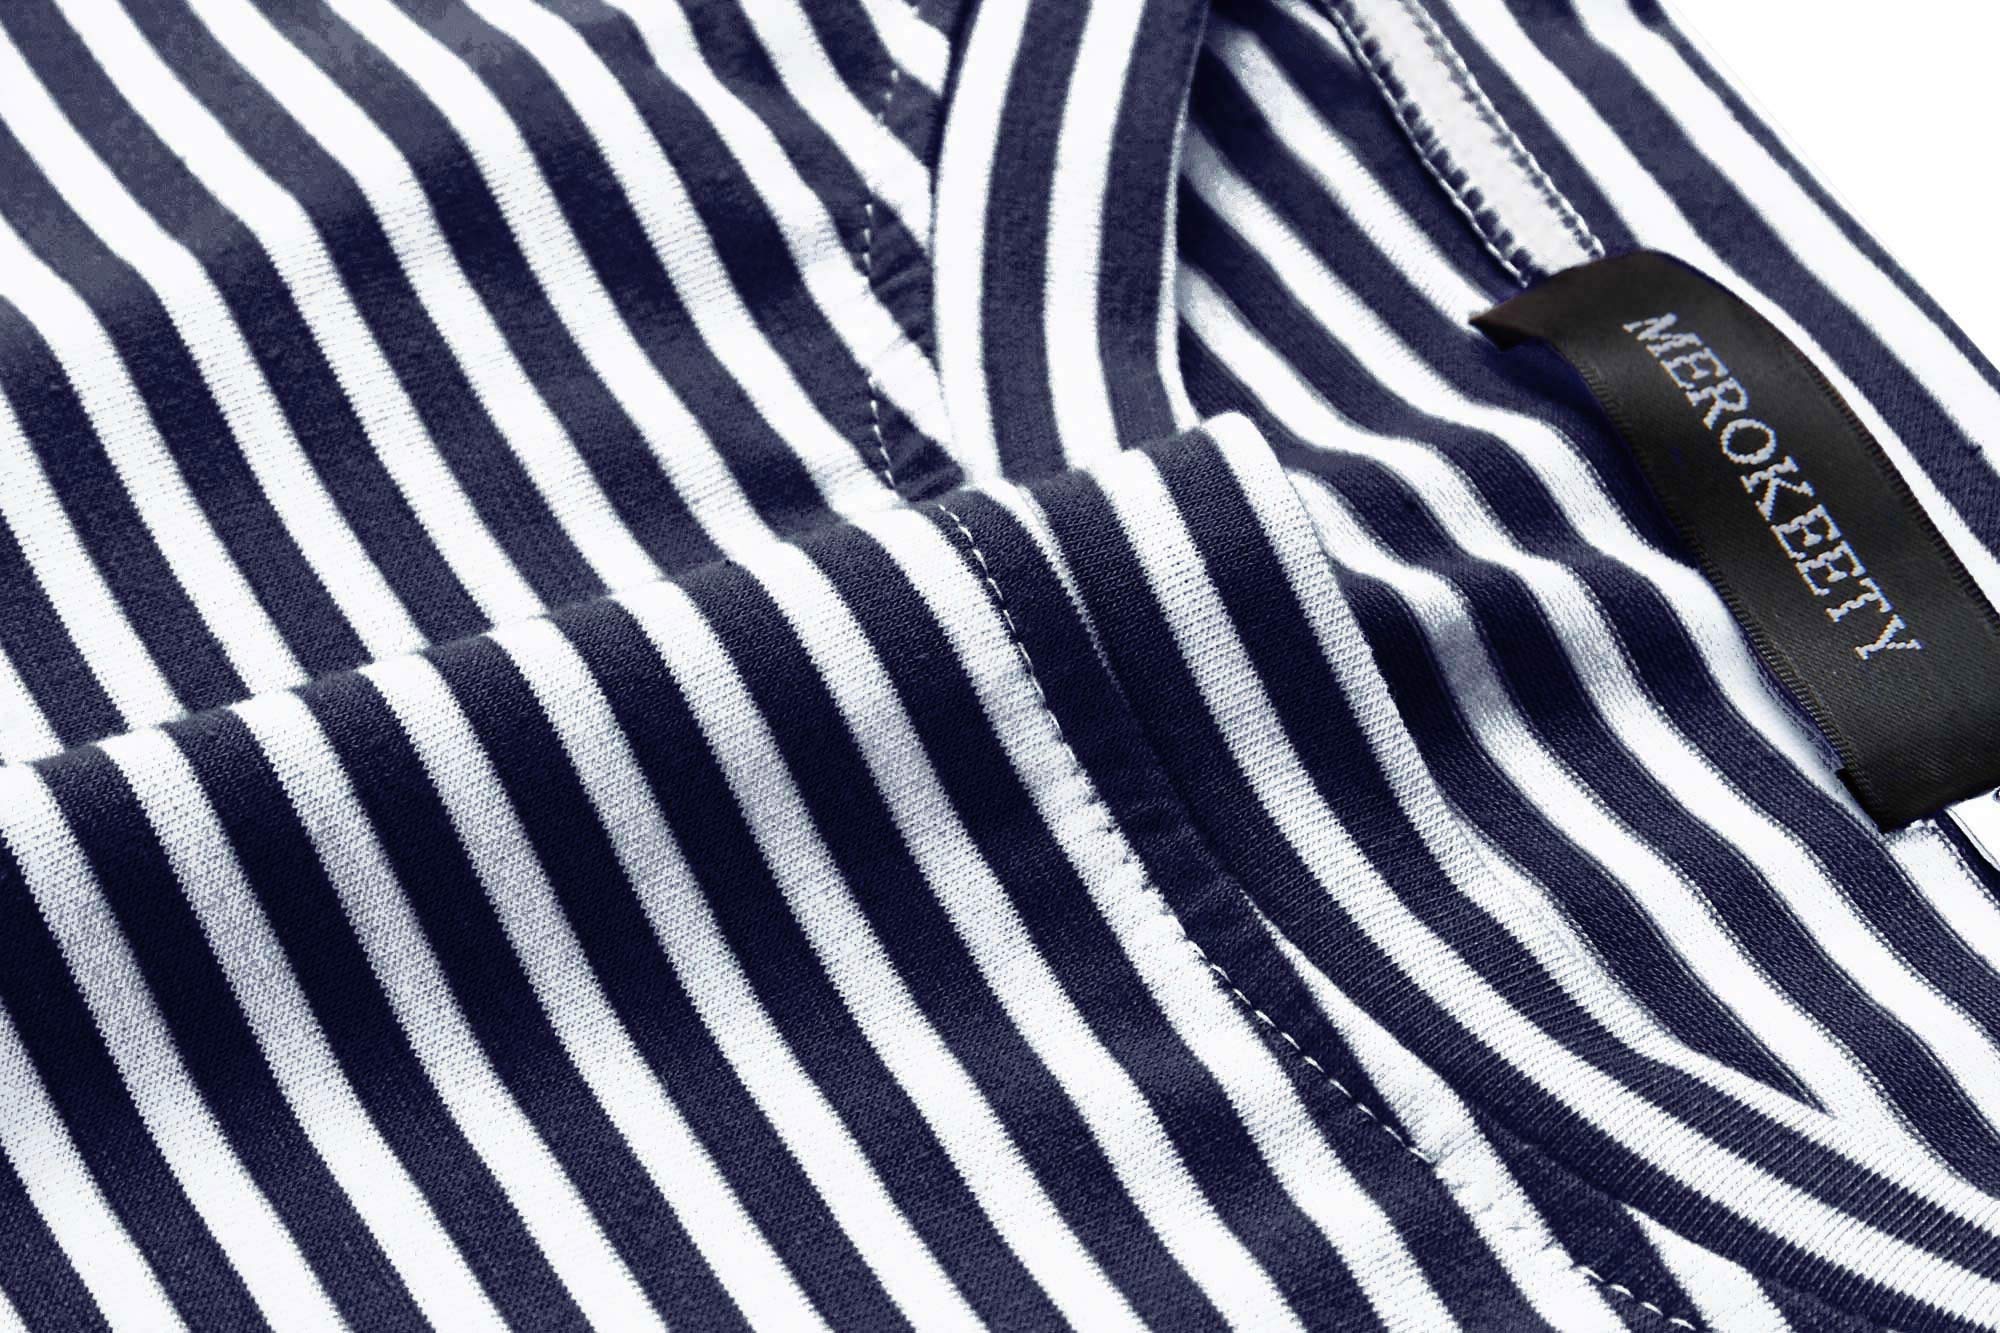 MEROKEETY Women's Summer Striped Short Sleeve T Shirt Dress Casual Tie Waist with Pockets